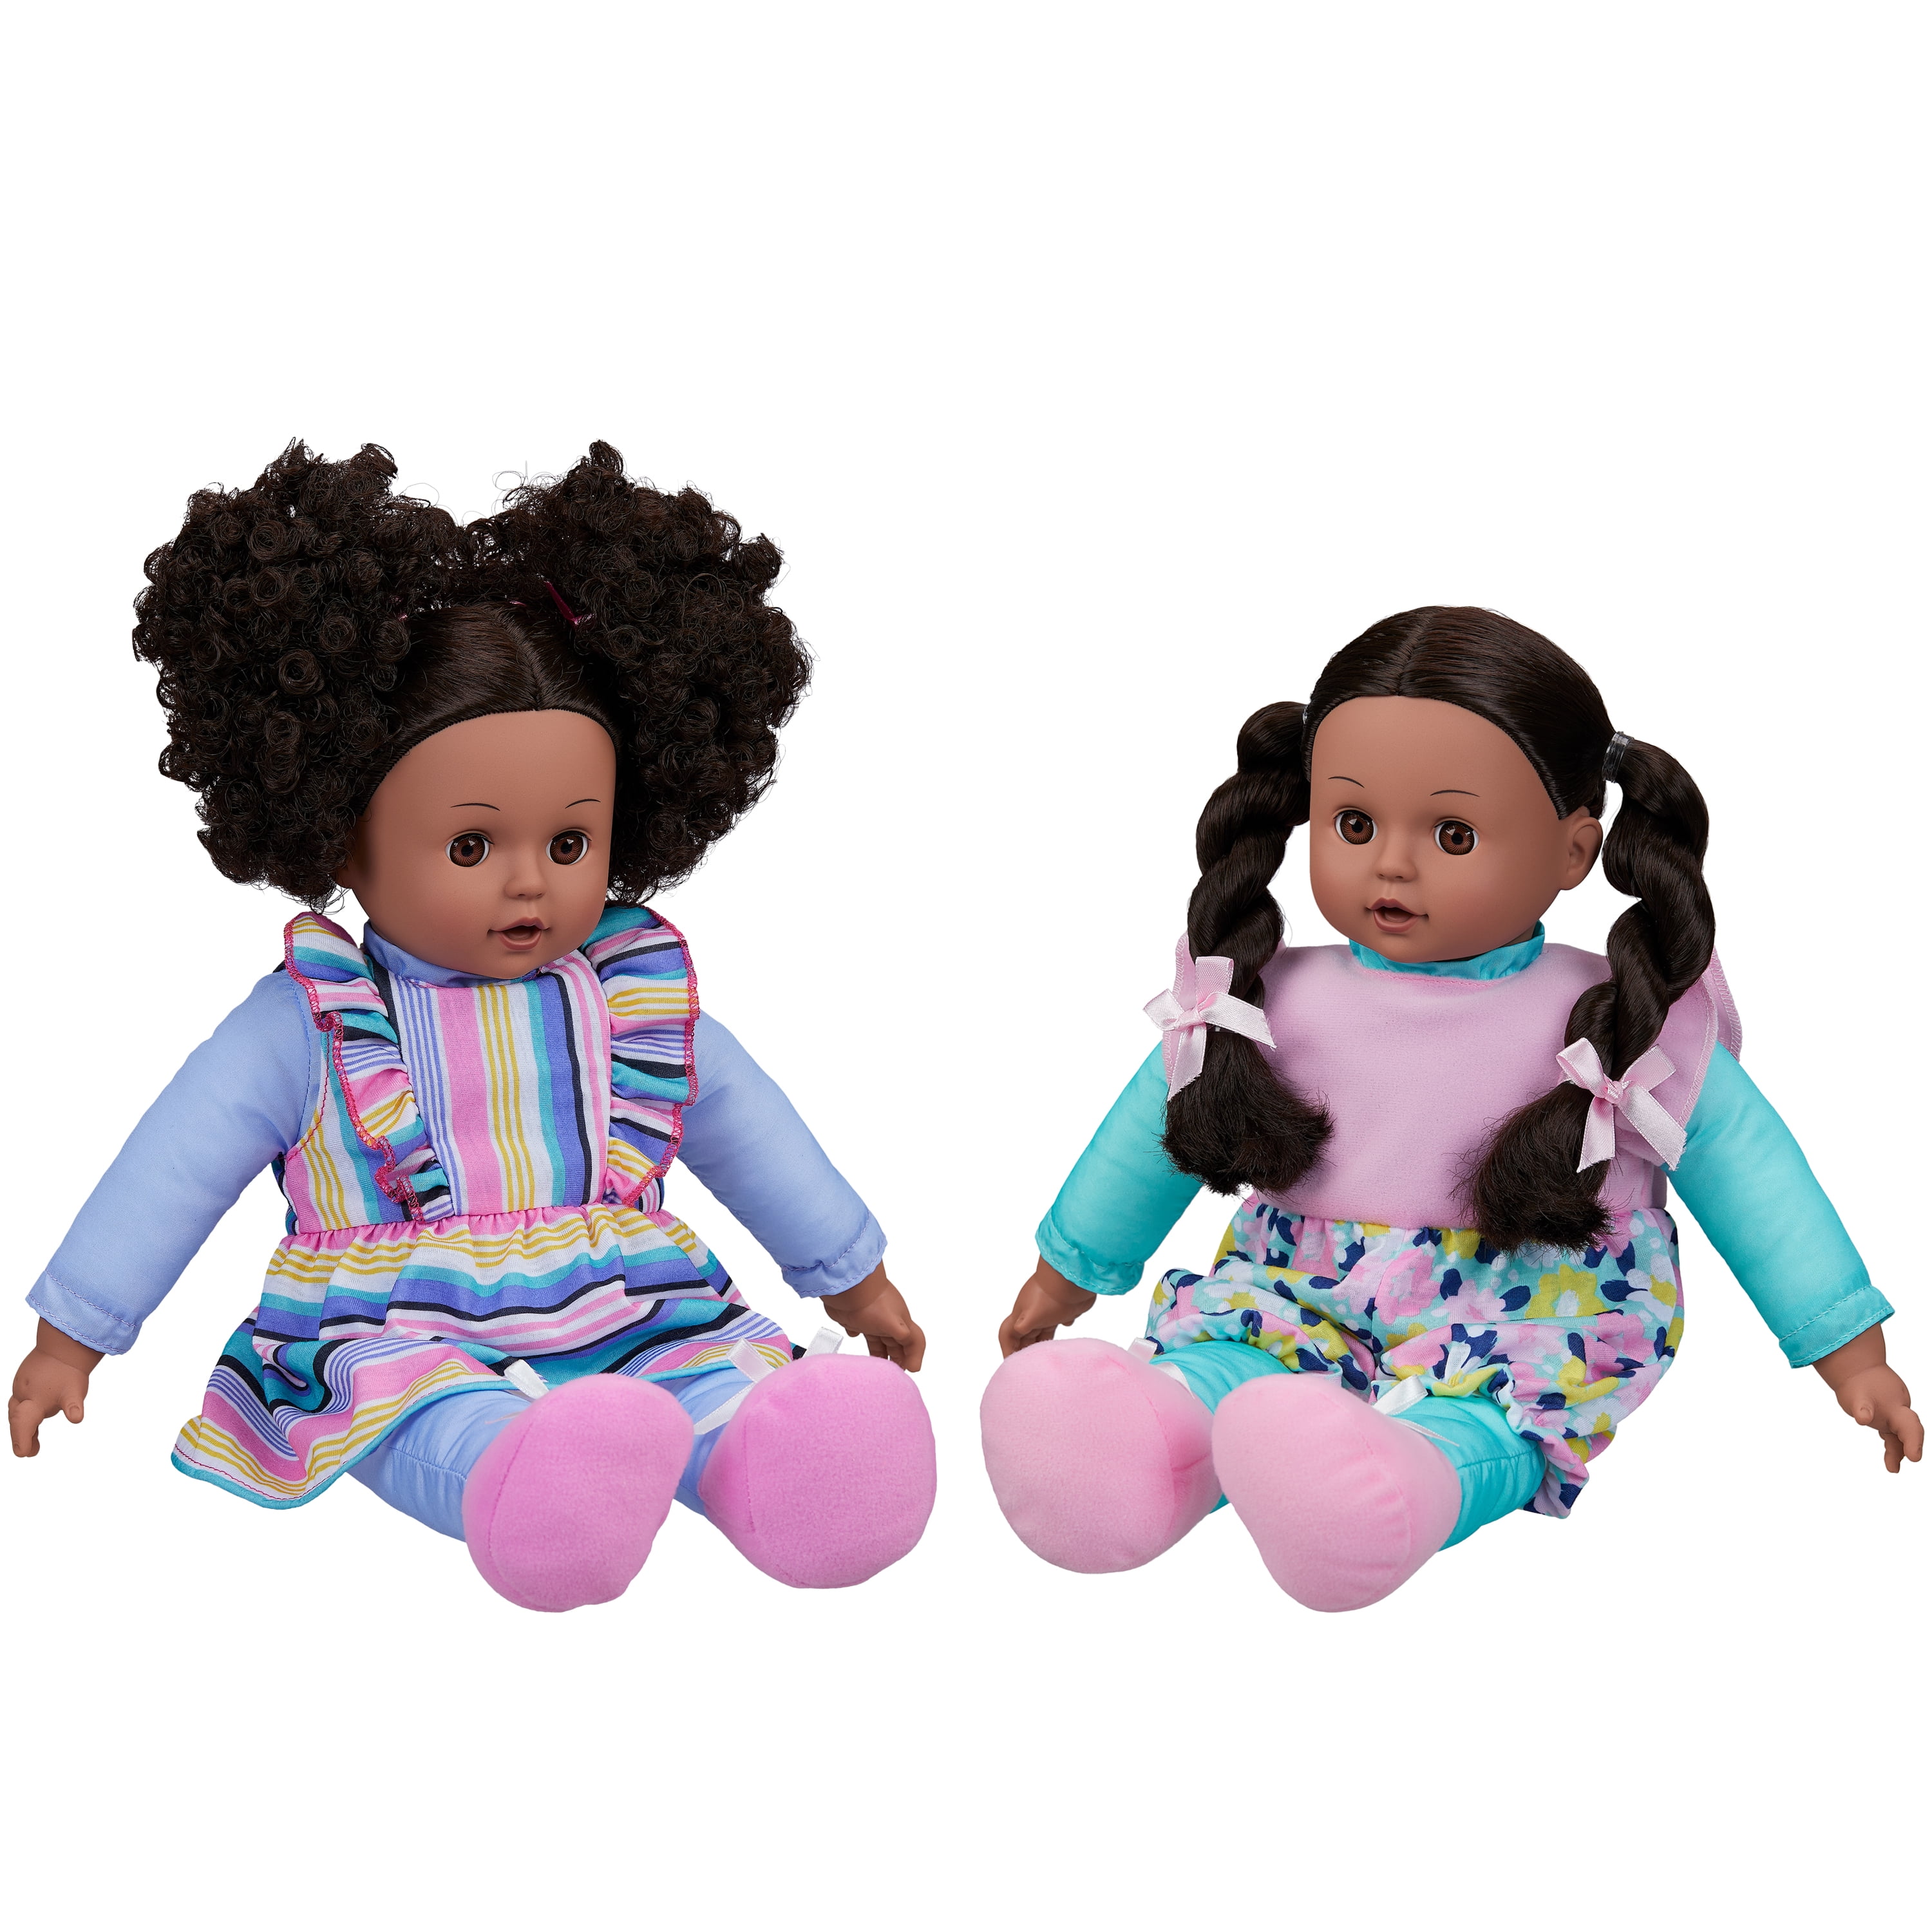 16" Ethnic Baby Doll Soft Newborn African Black Dark Skin Doll Sleeping Eyes 